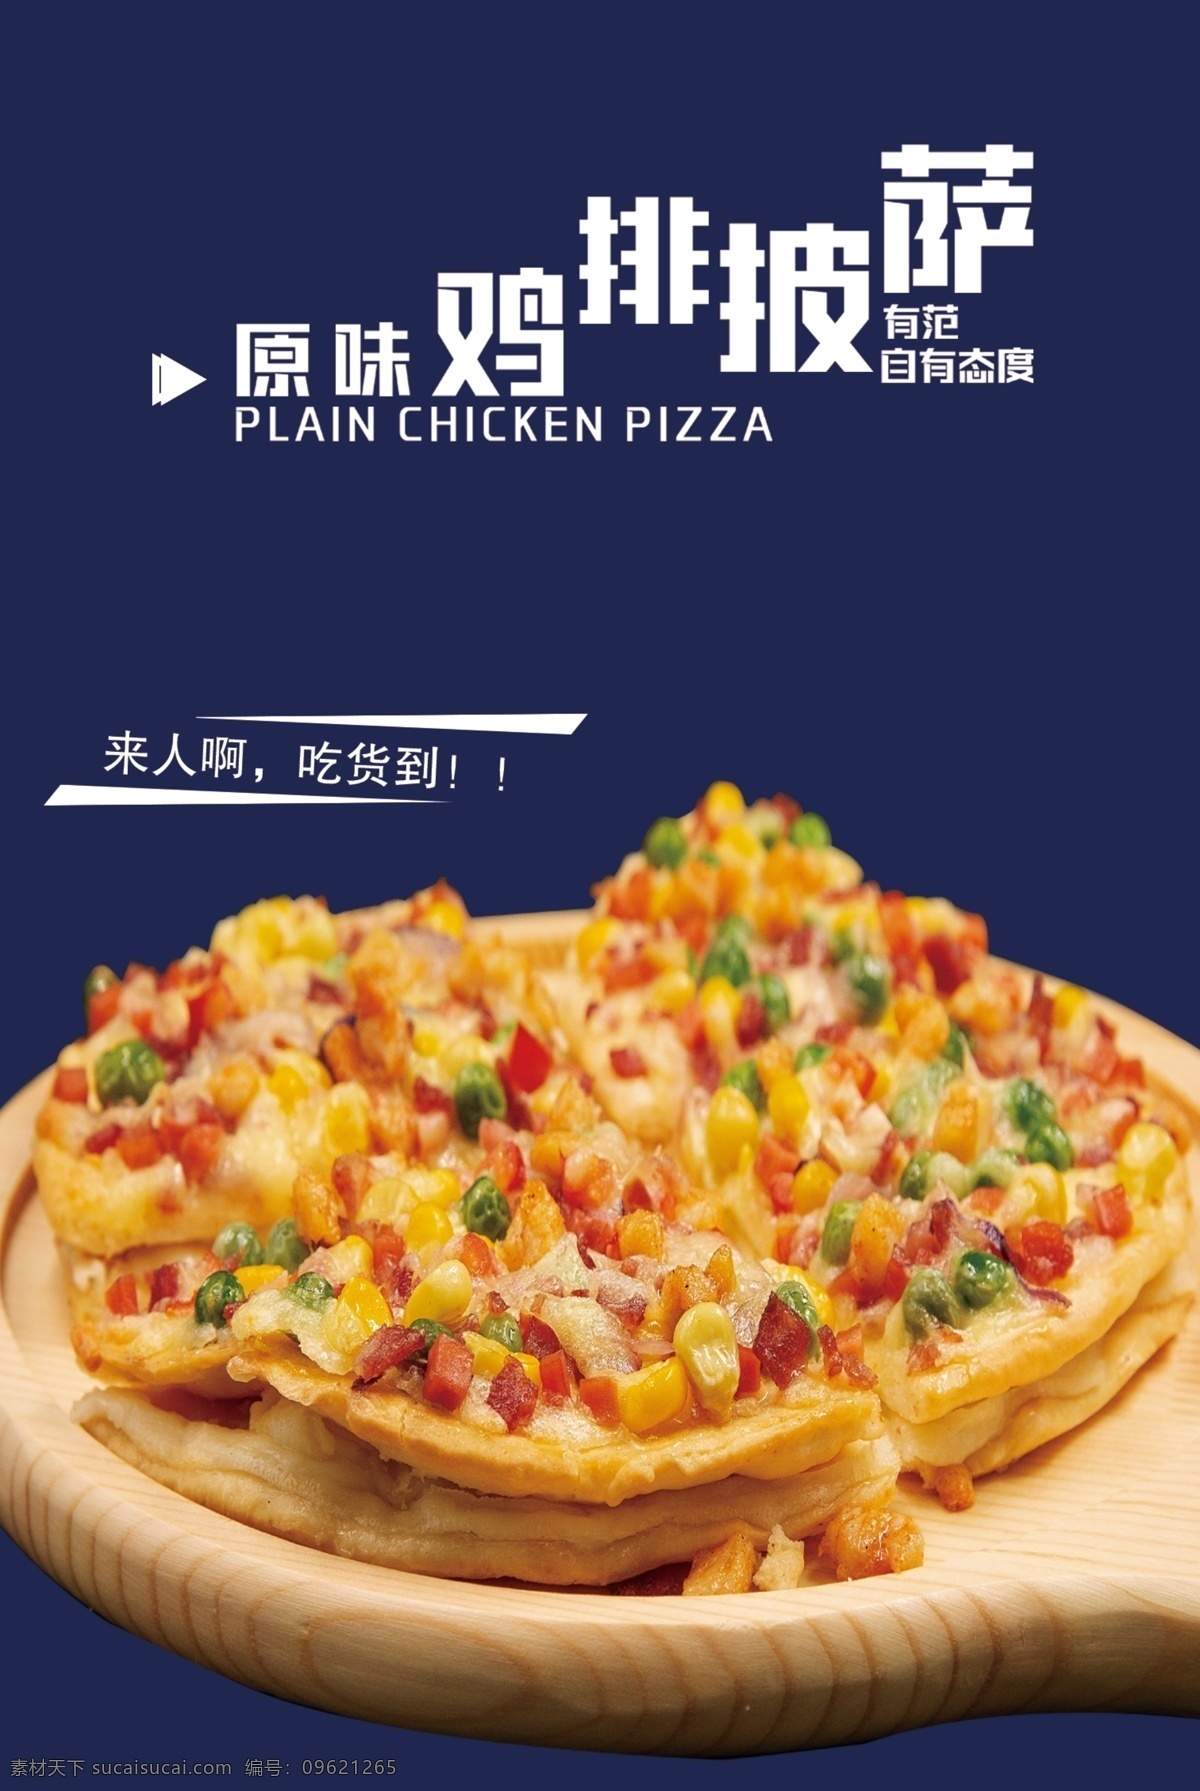 原味鸡排披萨 高清抠图 披萨 快餐素材 快餐图片 美食高清图片 灯片 psd分层